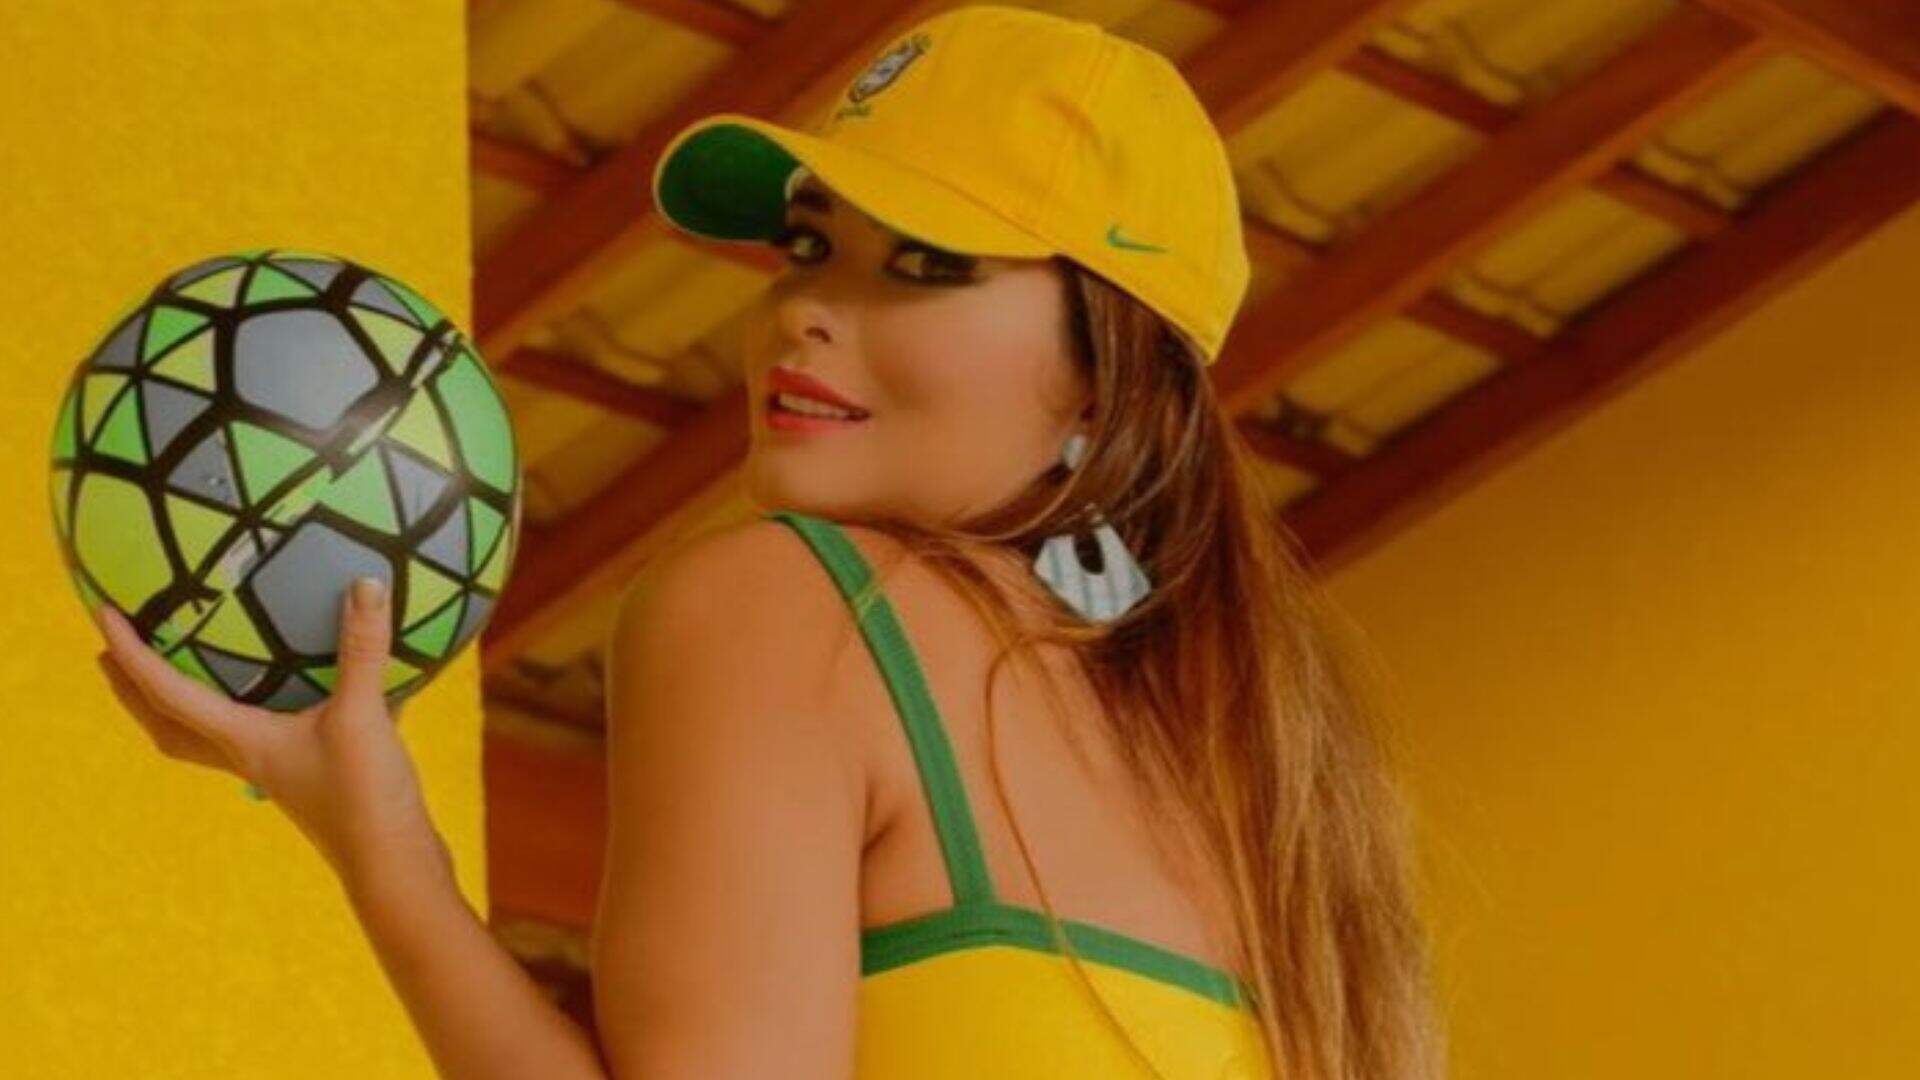 Abaixando a calcinha, Geisy Arruda fica só com camiseta do Brasil: “O Hexa começa com a rosinha” - Metropolitana FM